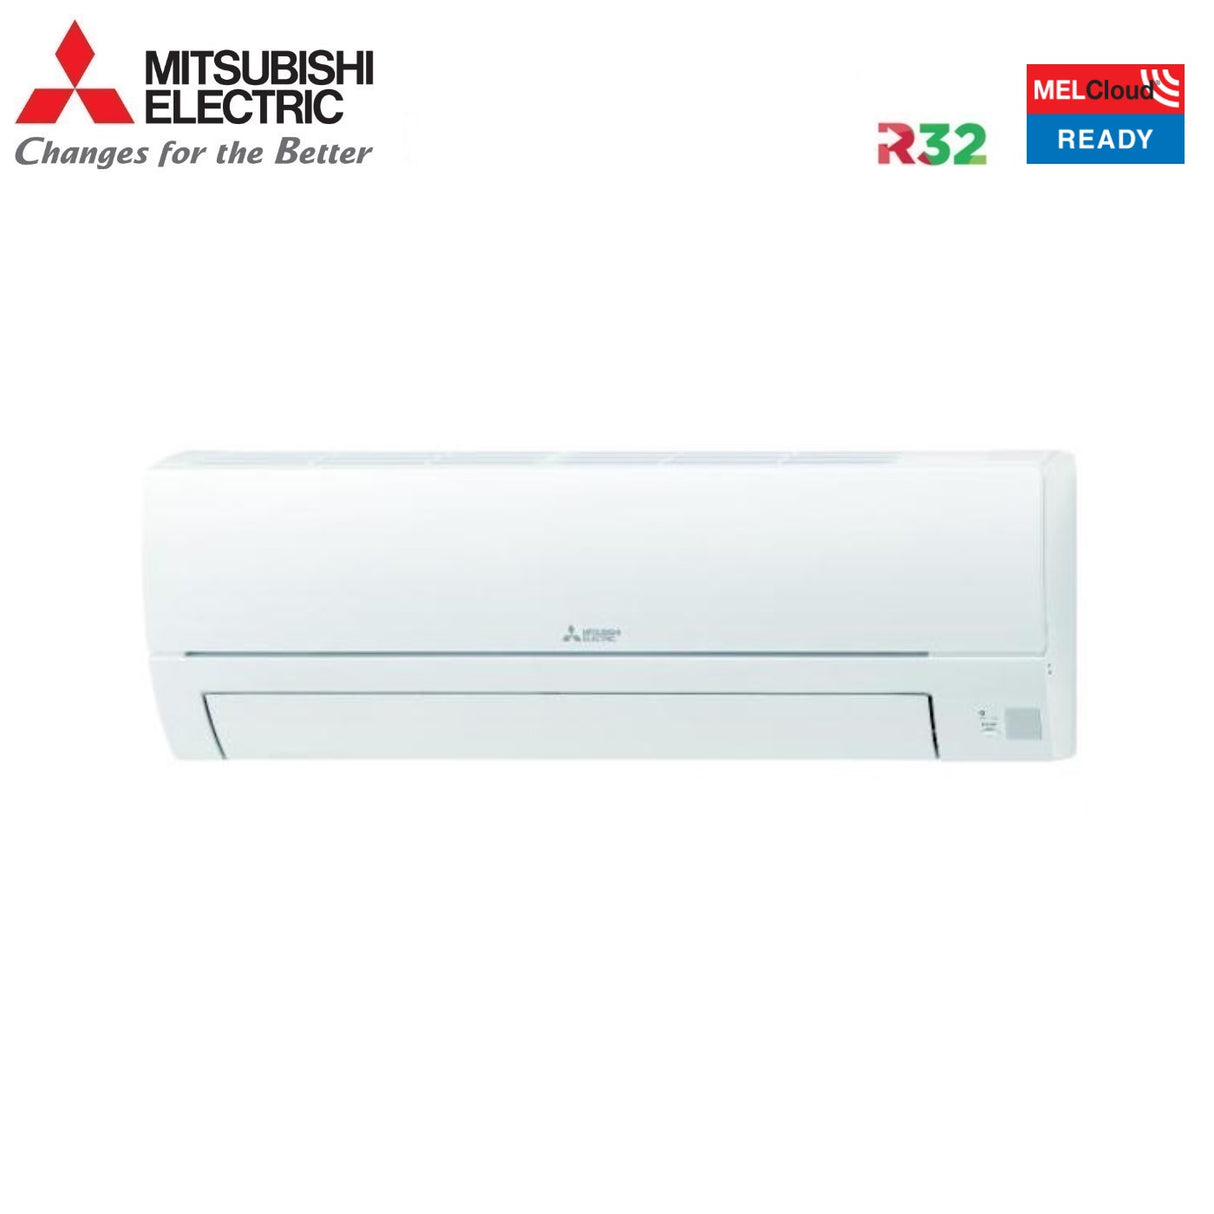 immagine-8-mitsubishi-electric-climatizzatore-condizionatore-mitsubishi-electric-inverter-serie-smart-msz-hr-24000-btu-msz-hr71vf-r-32-wi-fi-optional-classe-aa-ean-8059657002846